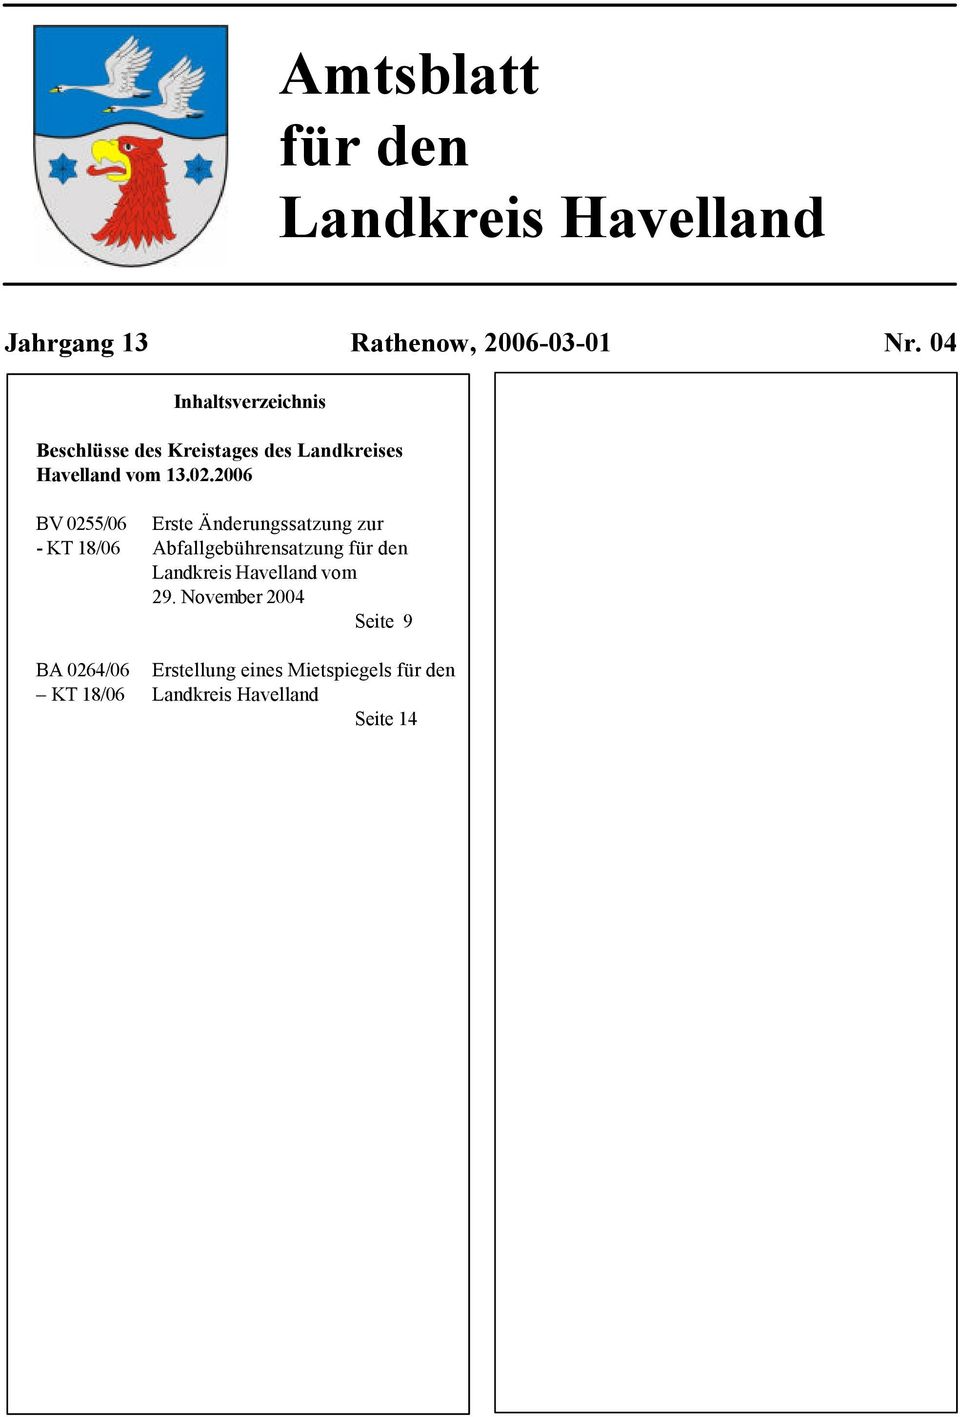 2006 BV 0255/06 Erste Änderungssatzung zur - KT 18/06 Abfallgebührensatzung für den Landkreis